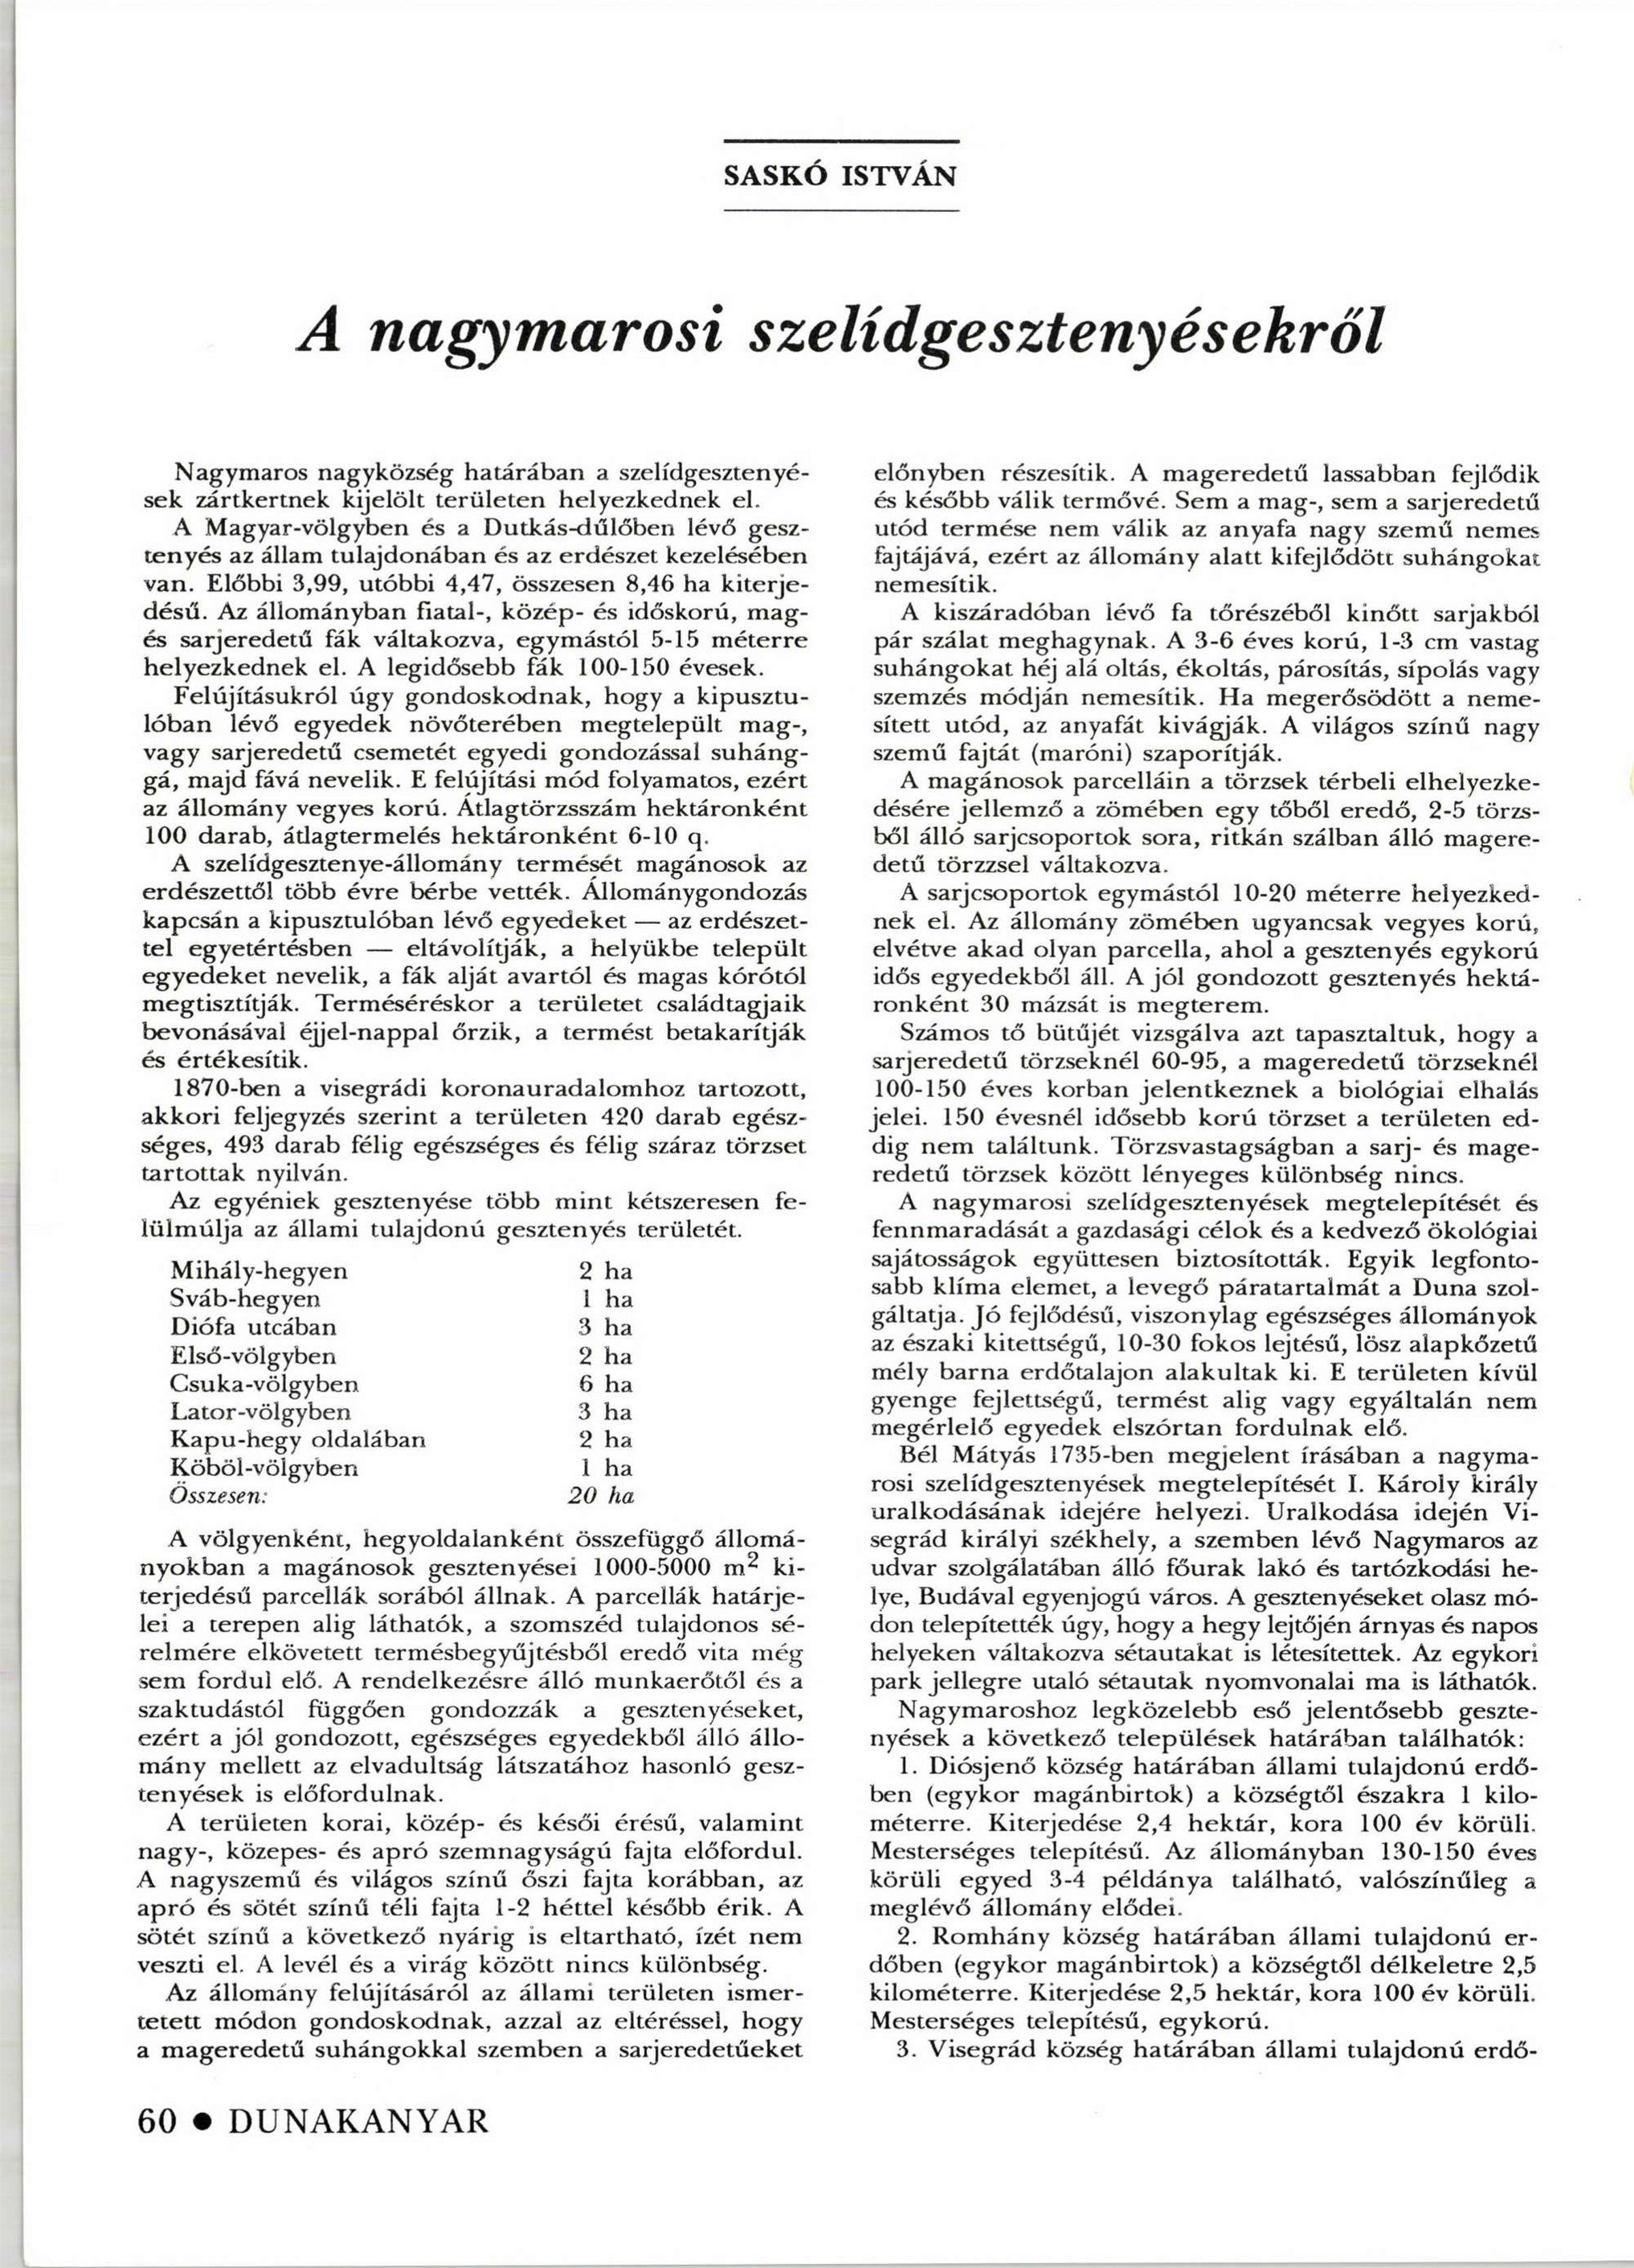 dunakanyar_1993_pages62-62.jpg